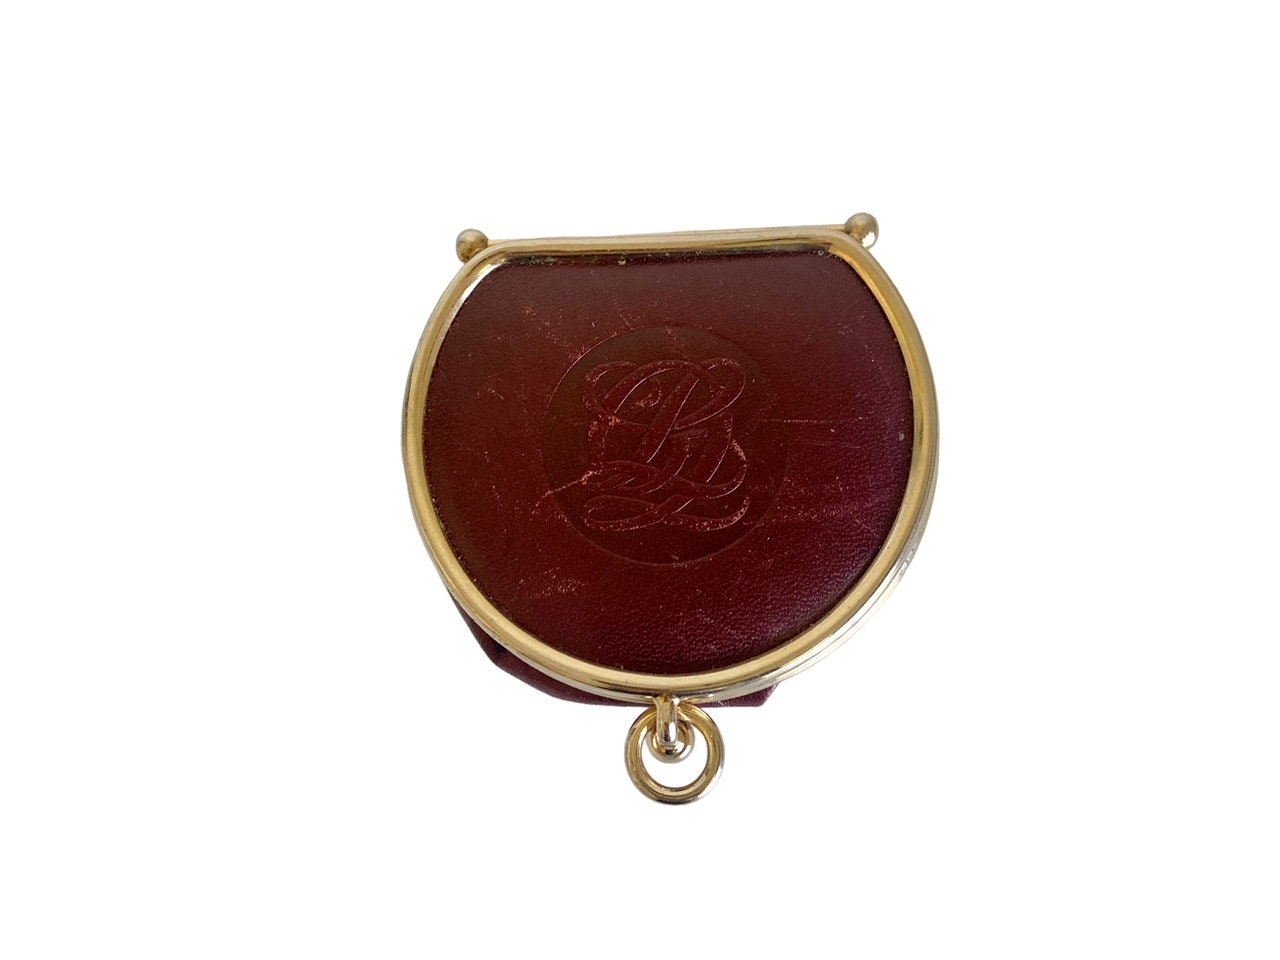 Vintage Louis Quatorze Paris Burgundy Oxblood Leather Envelope